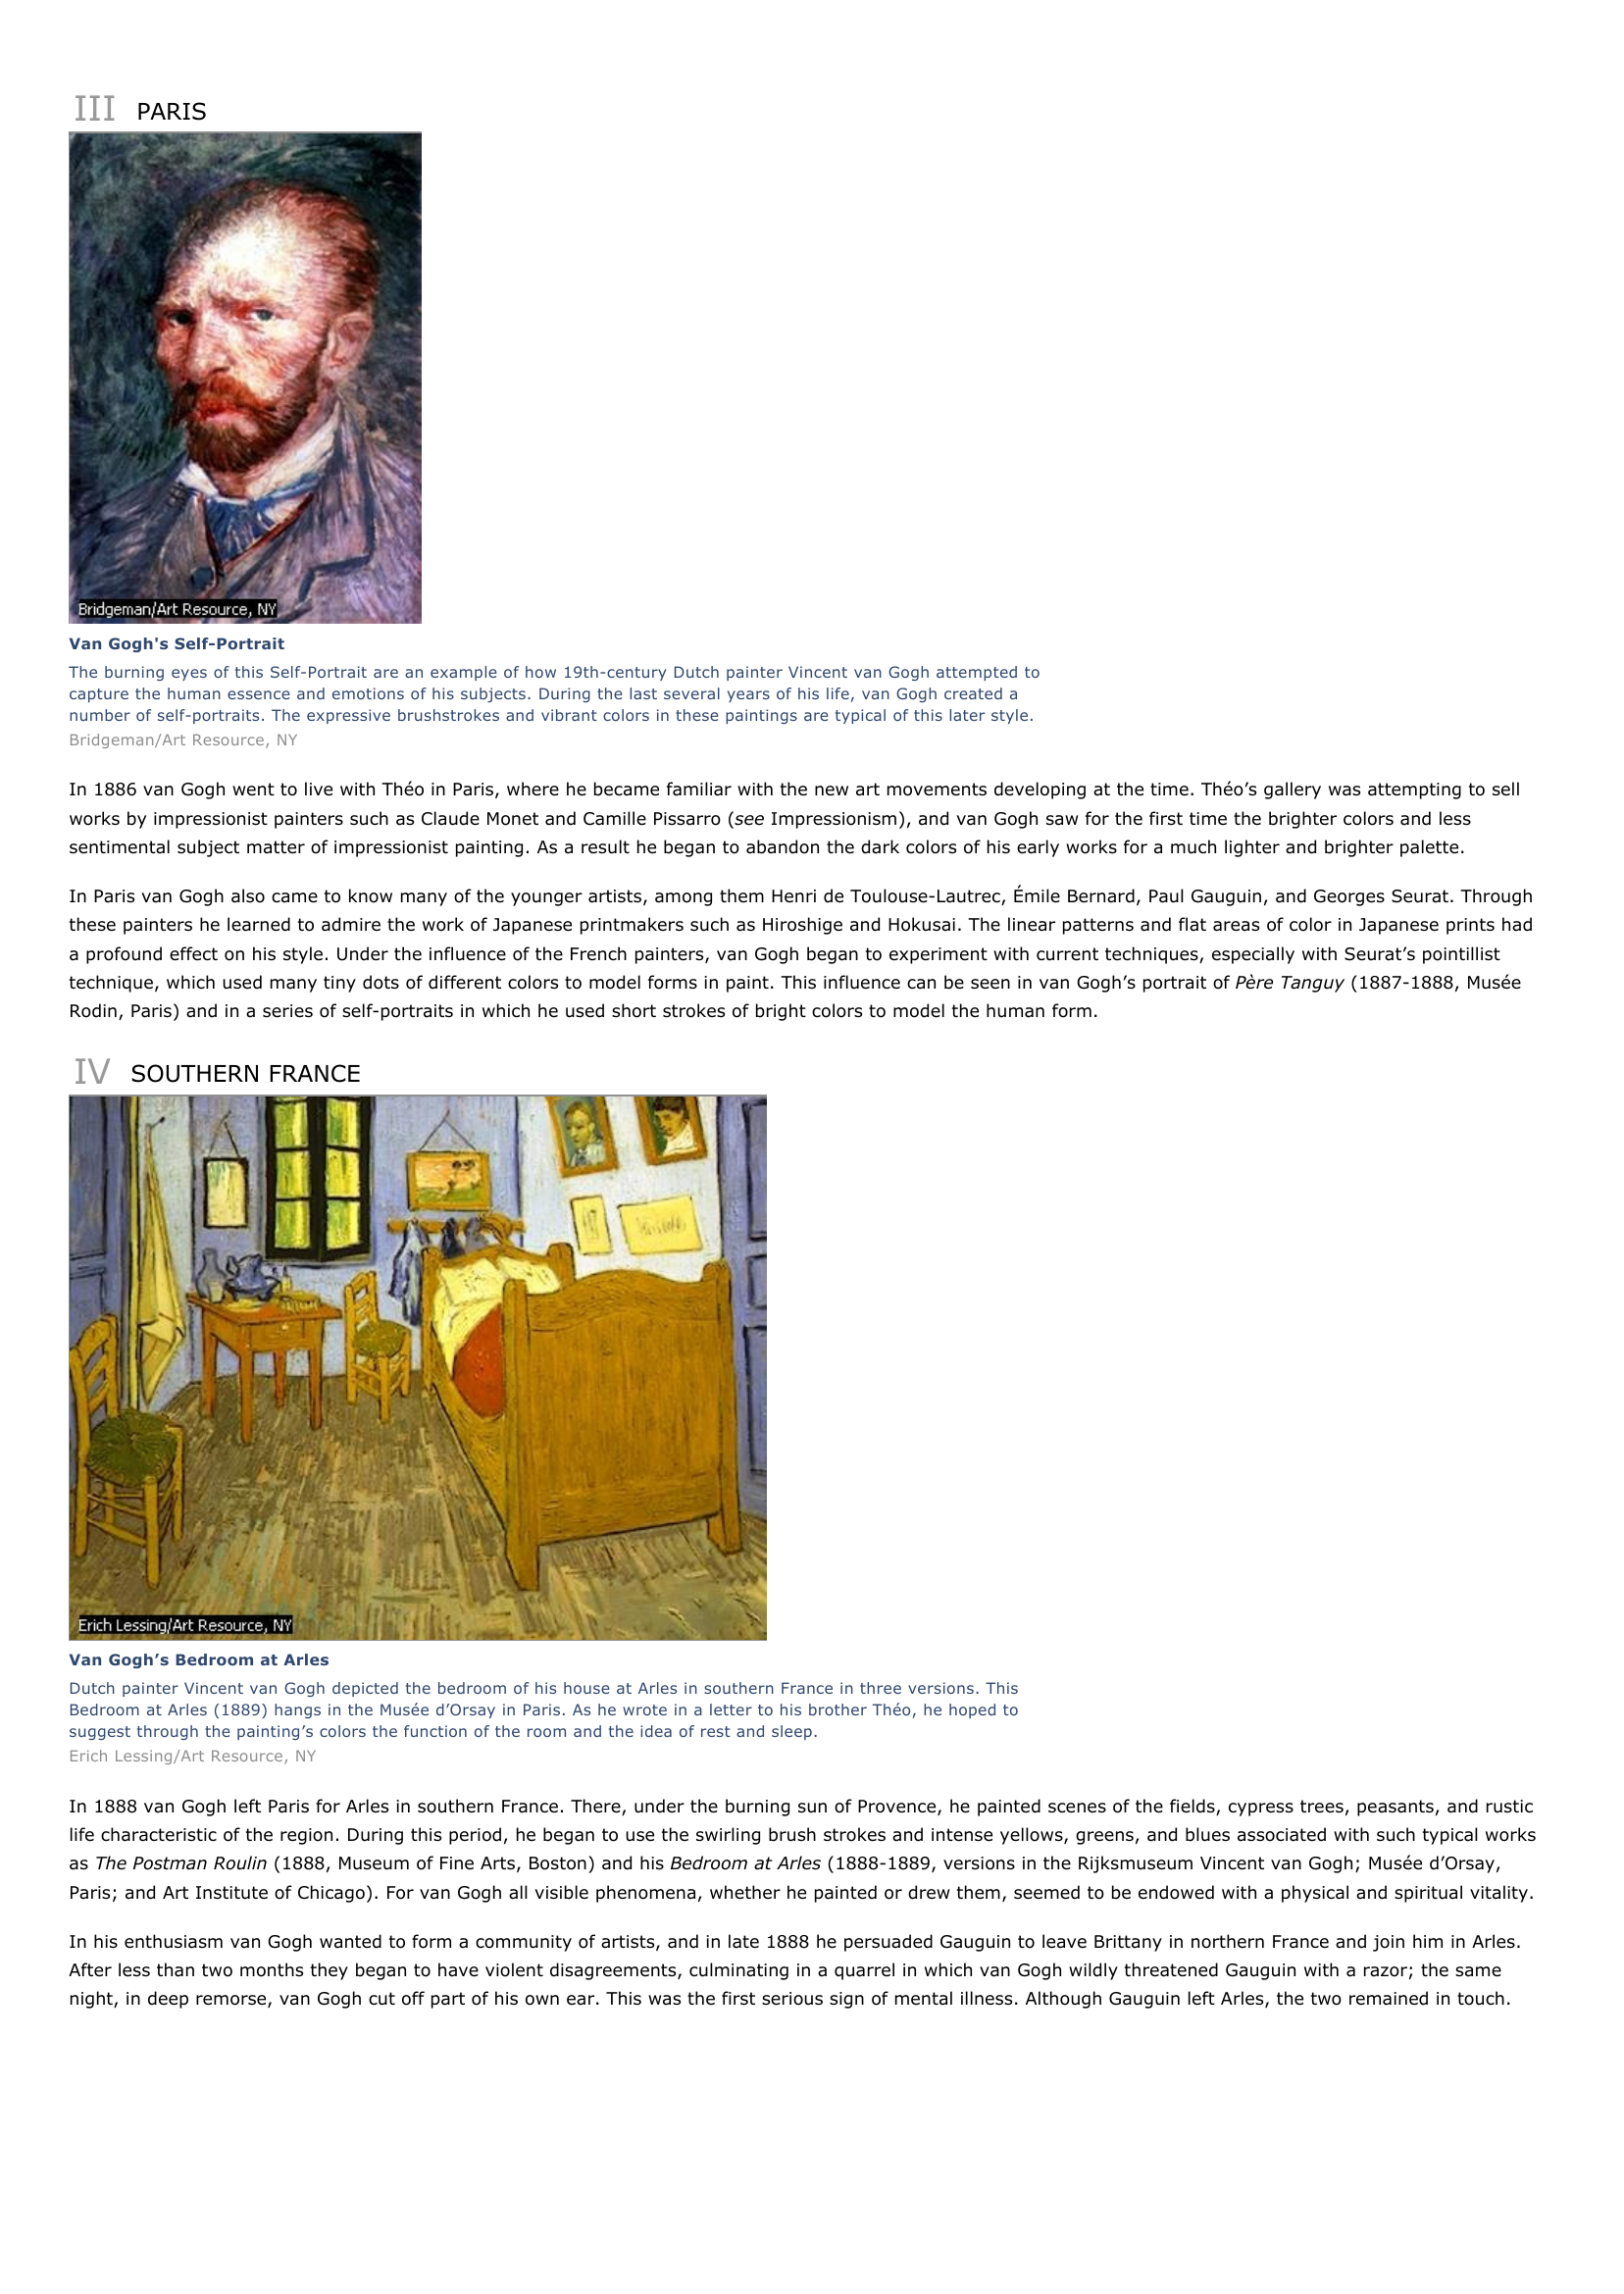 Prévisualisation du document Vincent van Gogh
I

INTRODUCTION

Church at Auvers by Van Gogh
Dutch artist Vincent van Gogh spent the last months of his life in Auvers-sur-Oise, near Paris, under the care of Dr.